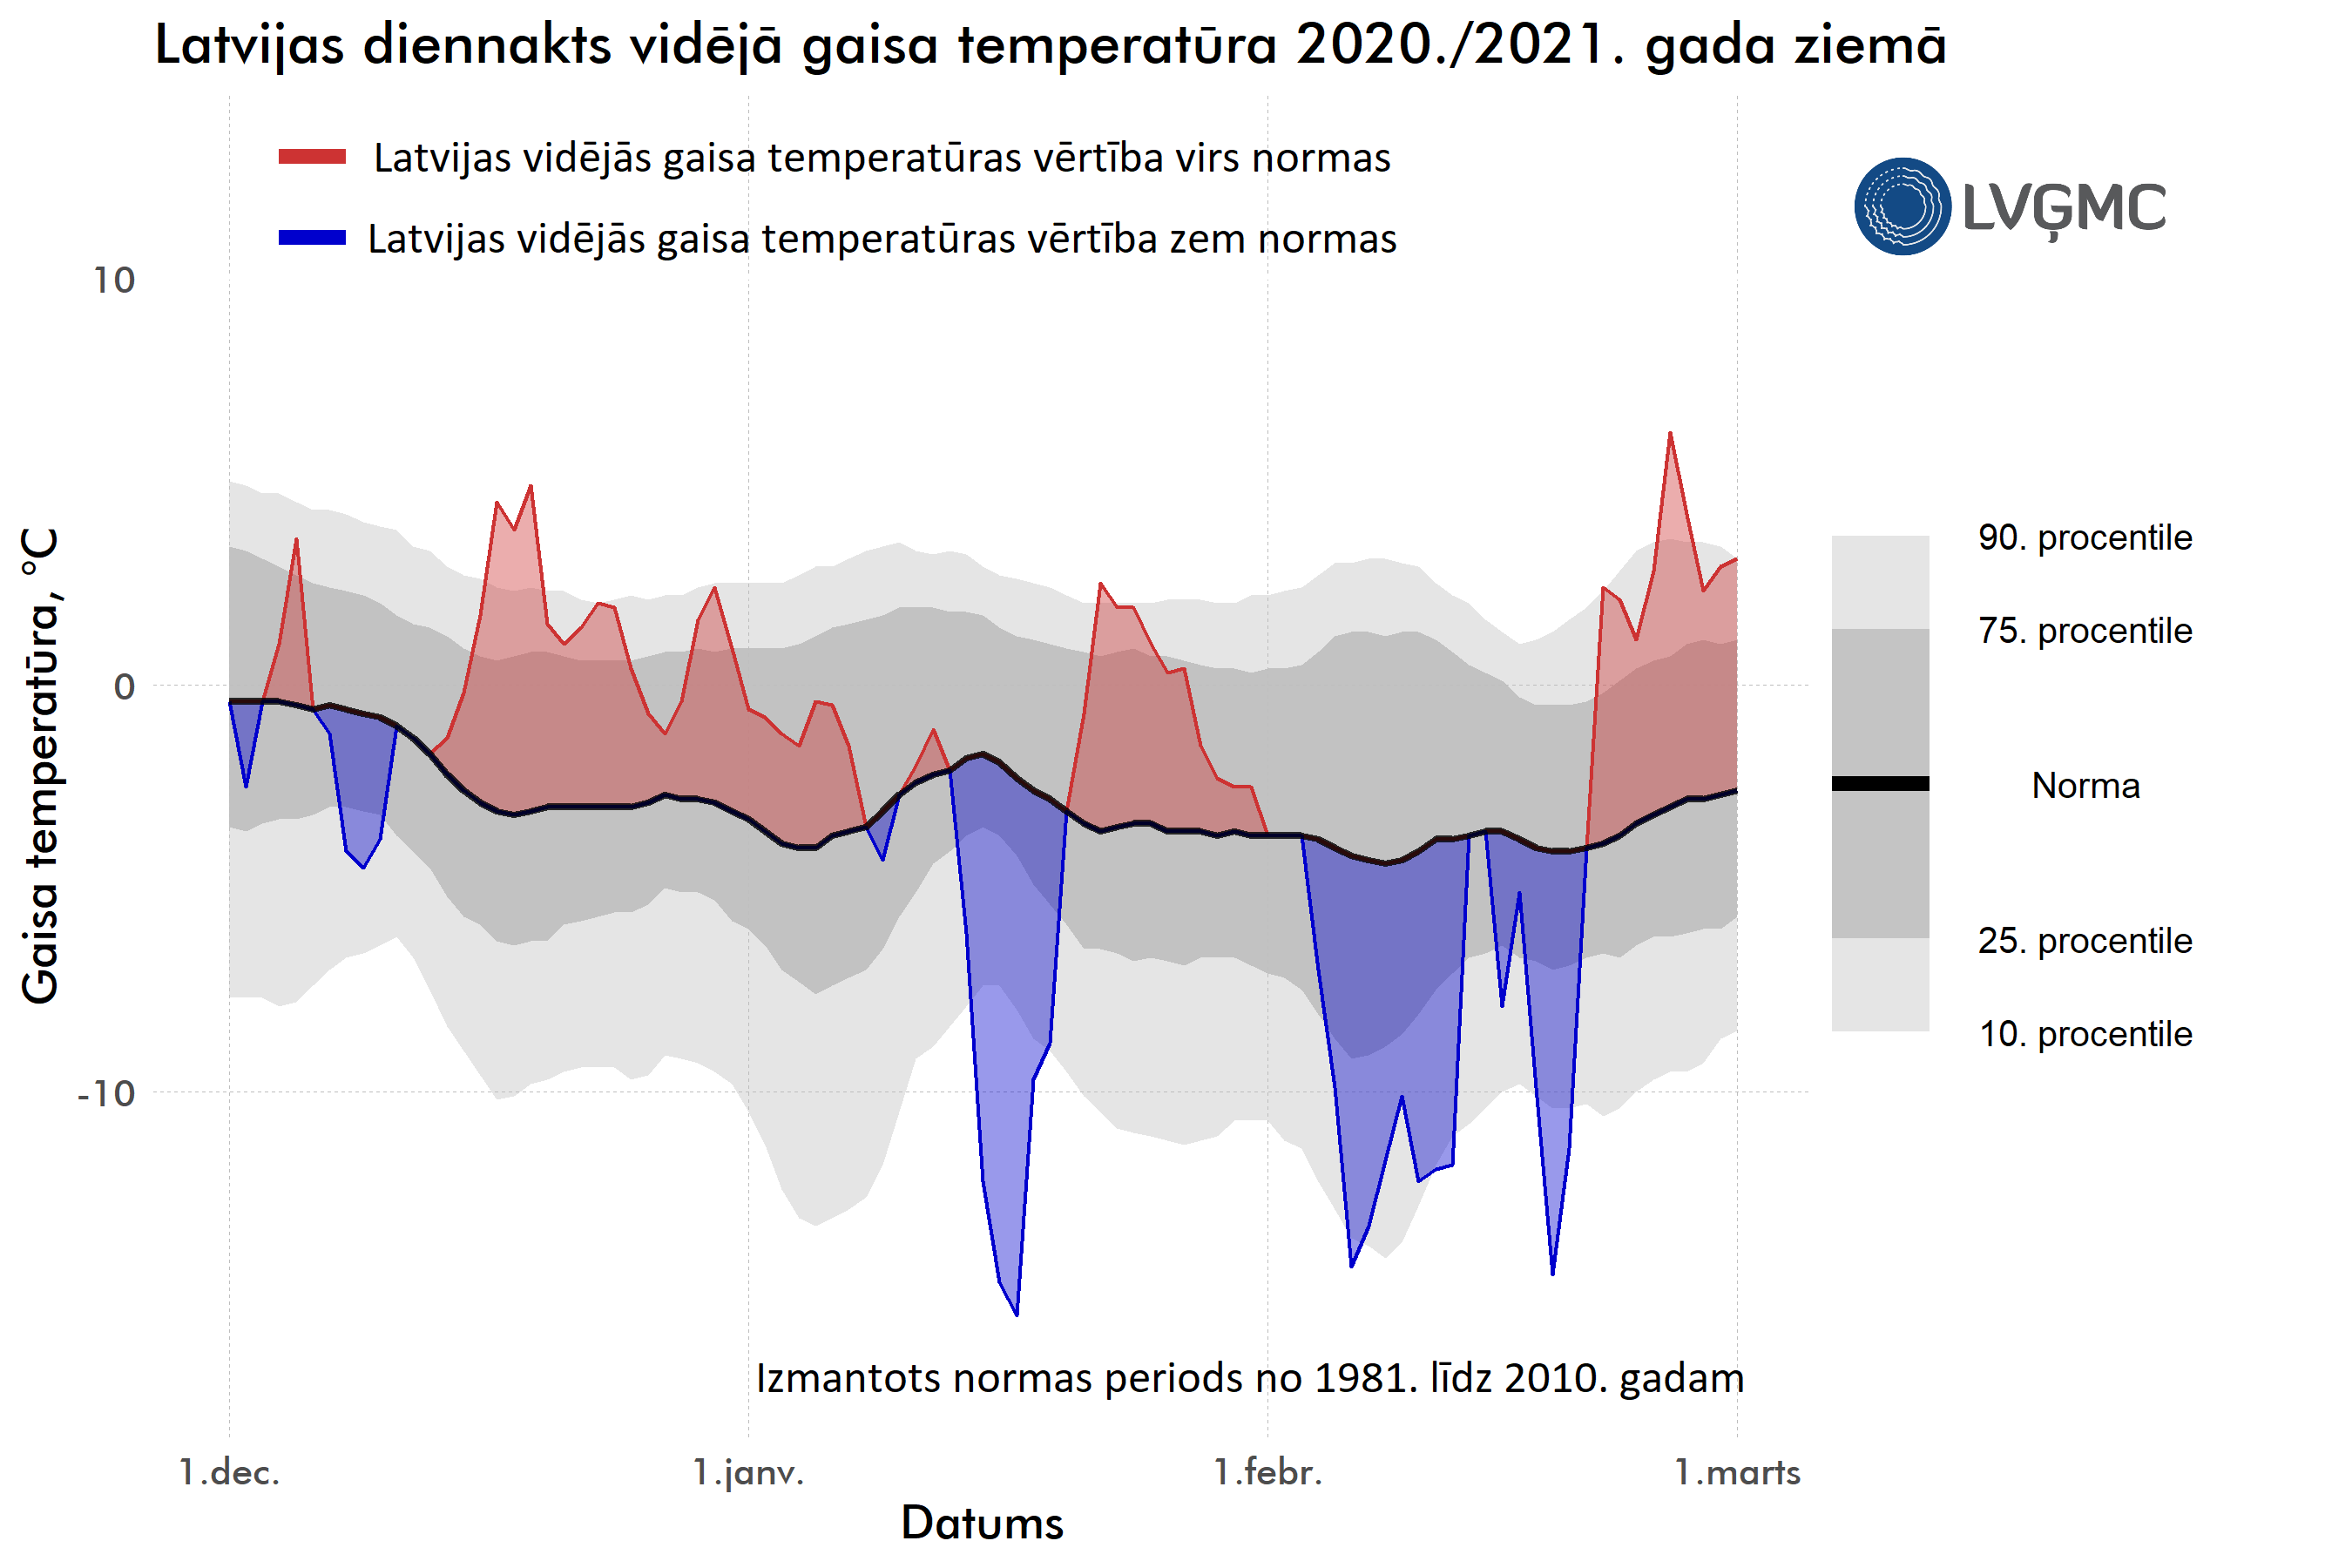 Latvijas diennakts vidējā gaisa temperatūra 2020./2021. gada ziemā, °C